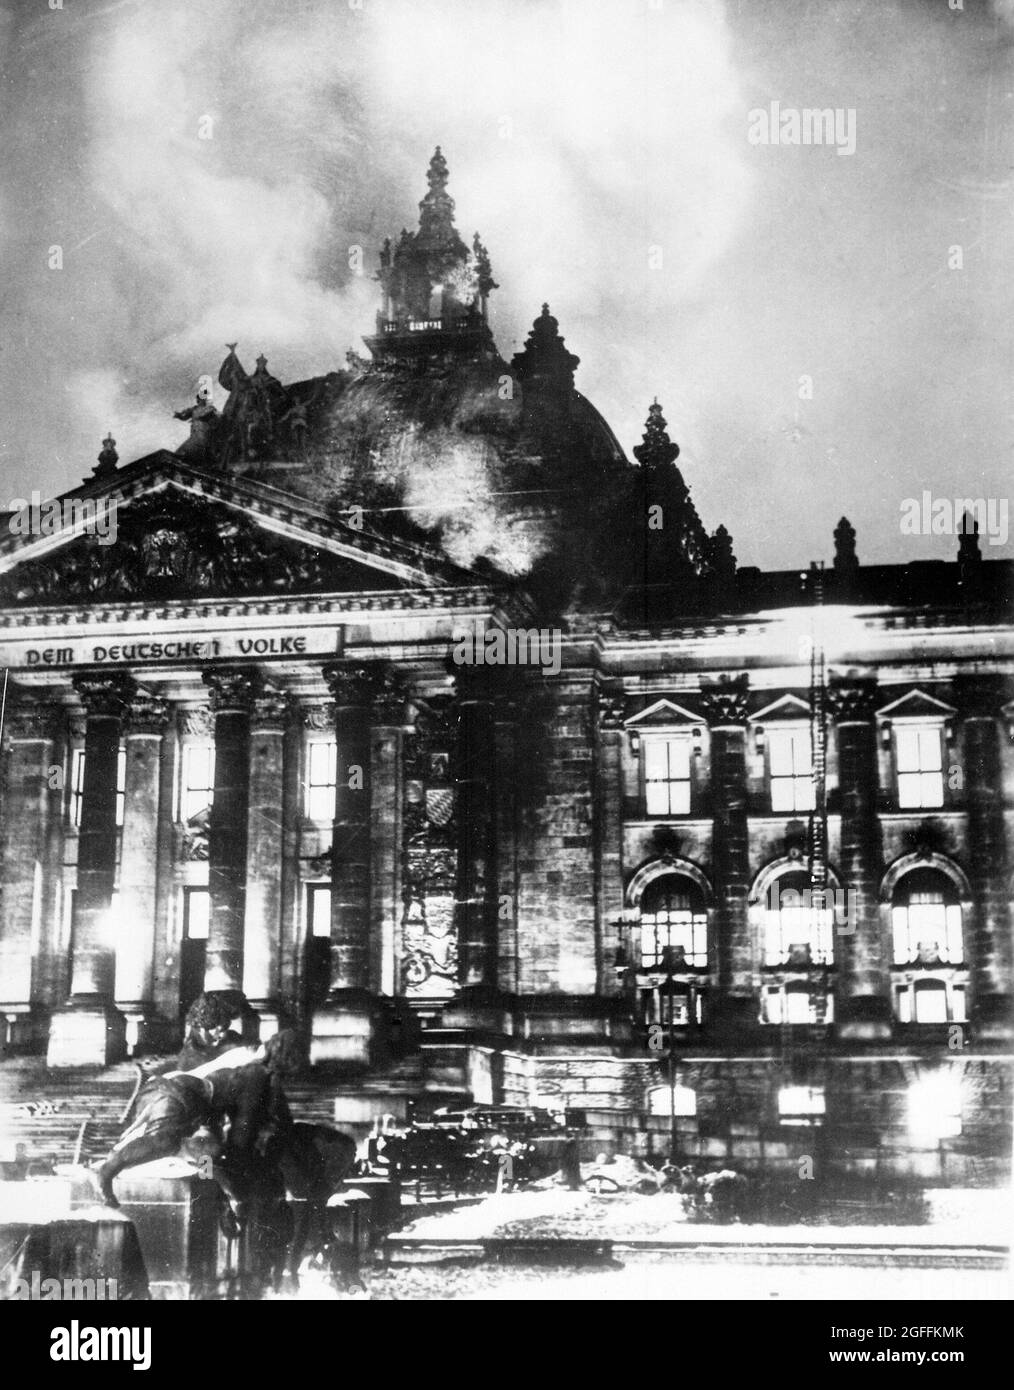 Le Reichstag en feu en février 1933. Ce feu a été utilisé pour créer la peur d'une montée communiste, ce qui a permis à Hitler d'adopter une loi lui permettant de gouverner par décret. Banque D'Images